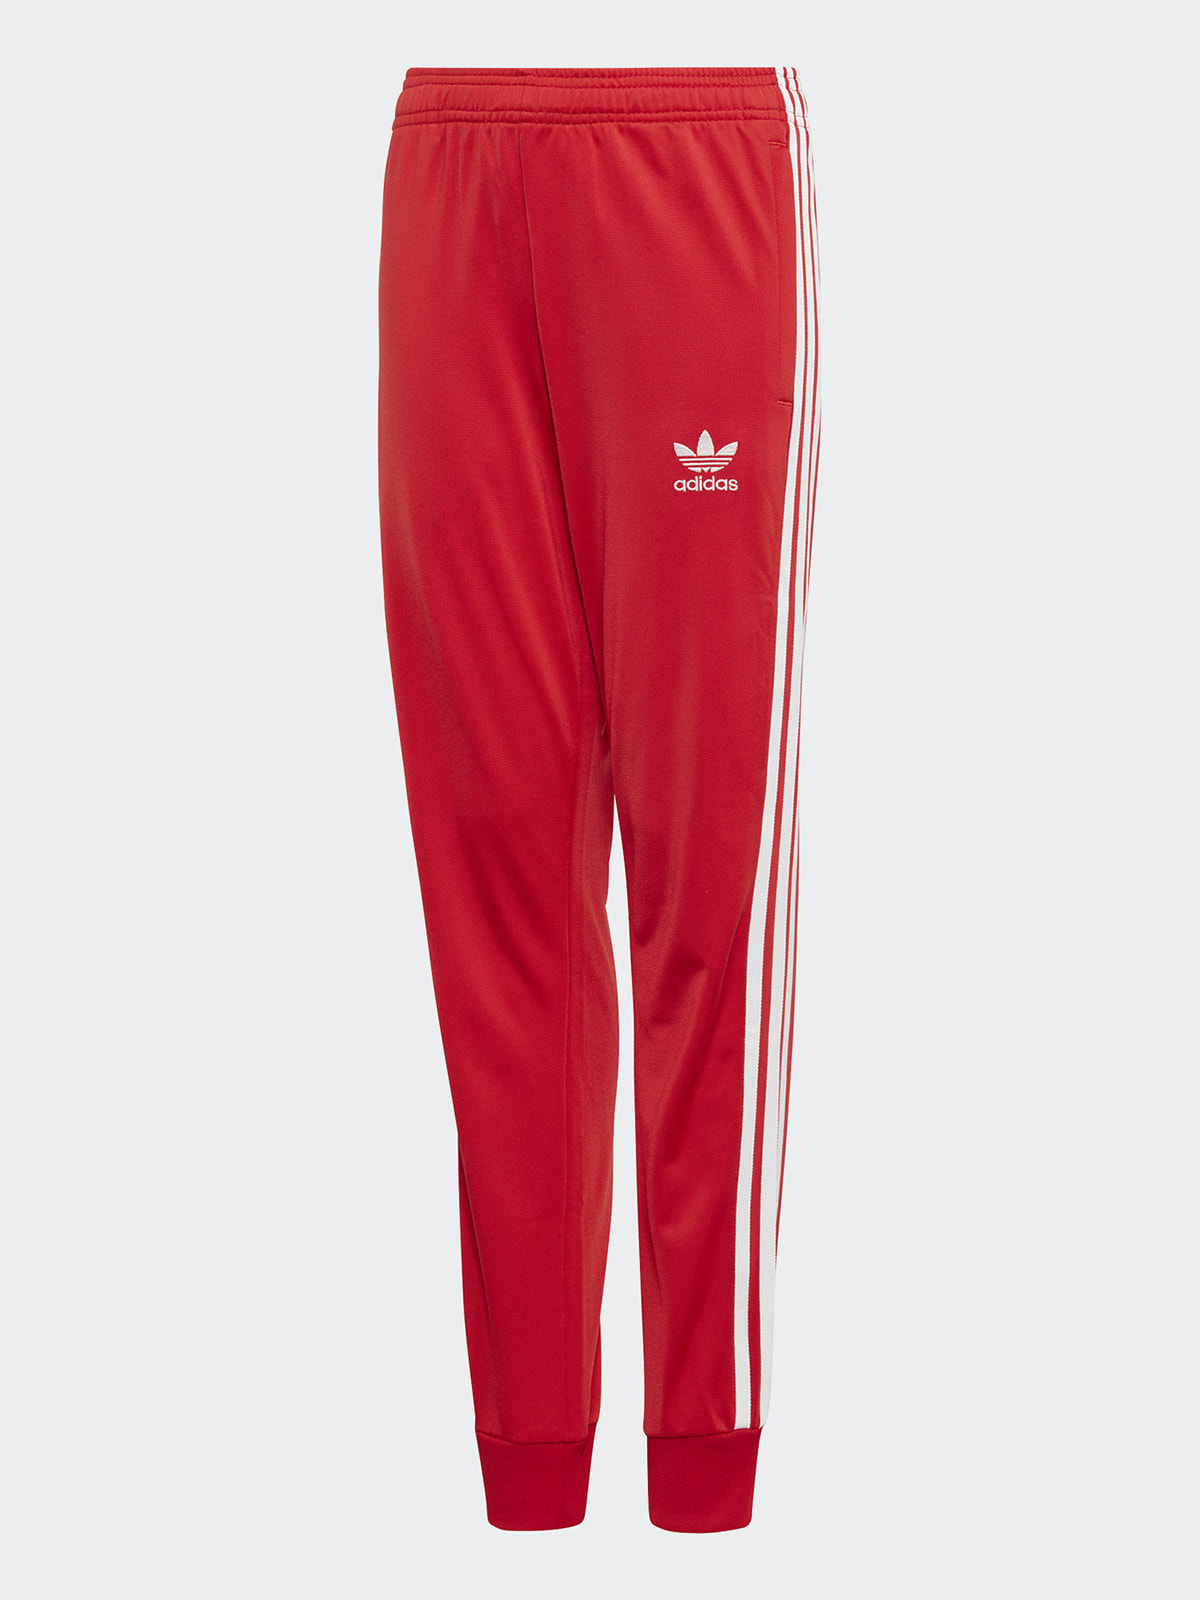 Красный спортивный адидас. Адидас Оригиналс брюки SST. Adidas Originals Red штаны. Красные штаны адидас ориджинал. Штаны адидас Ориджиналс.